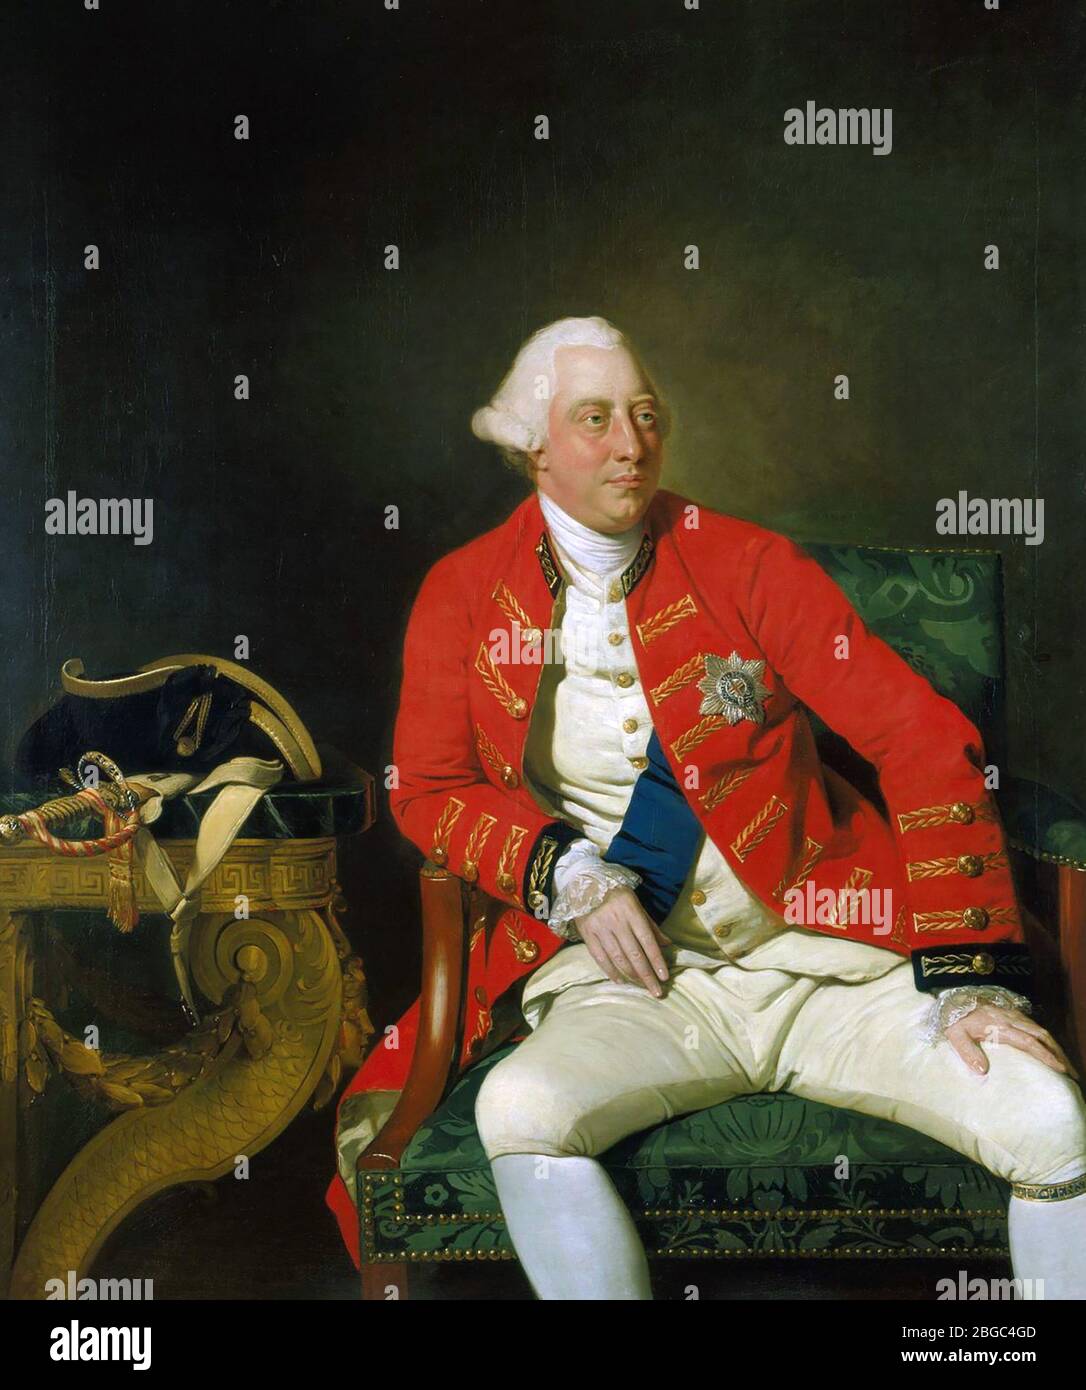 LE ROI GEORGE III de Grande-Bretagne et d'Irlande du Nord peint par Johann Zoffany en 1771. Banque D'Images